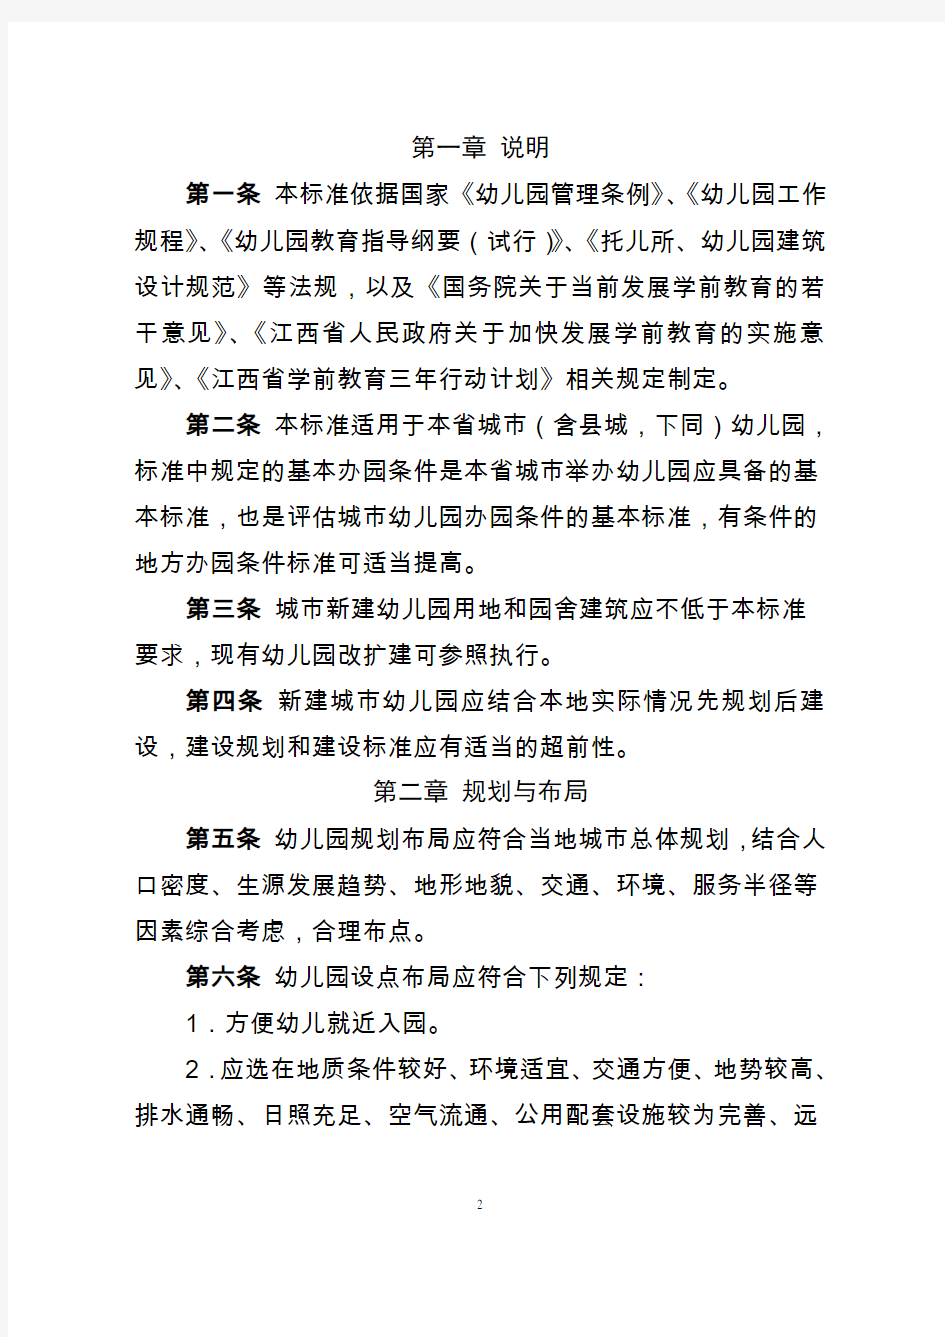 (附件)江西省幼儿园基本办园条件标准